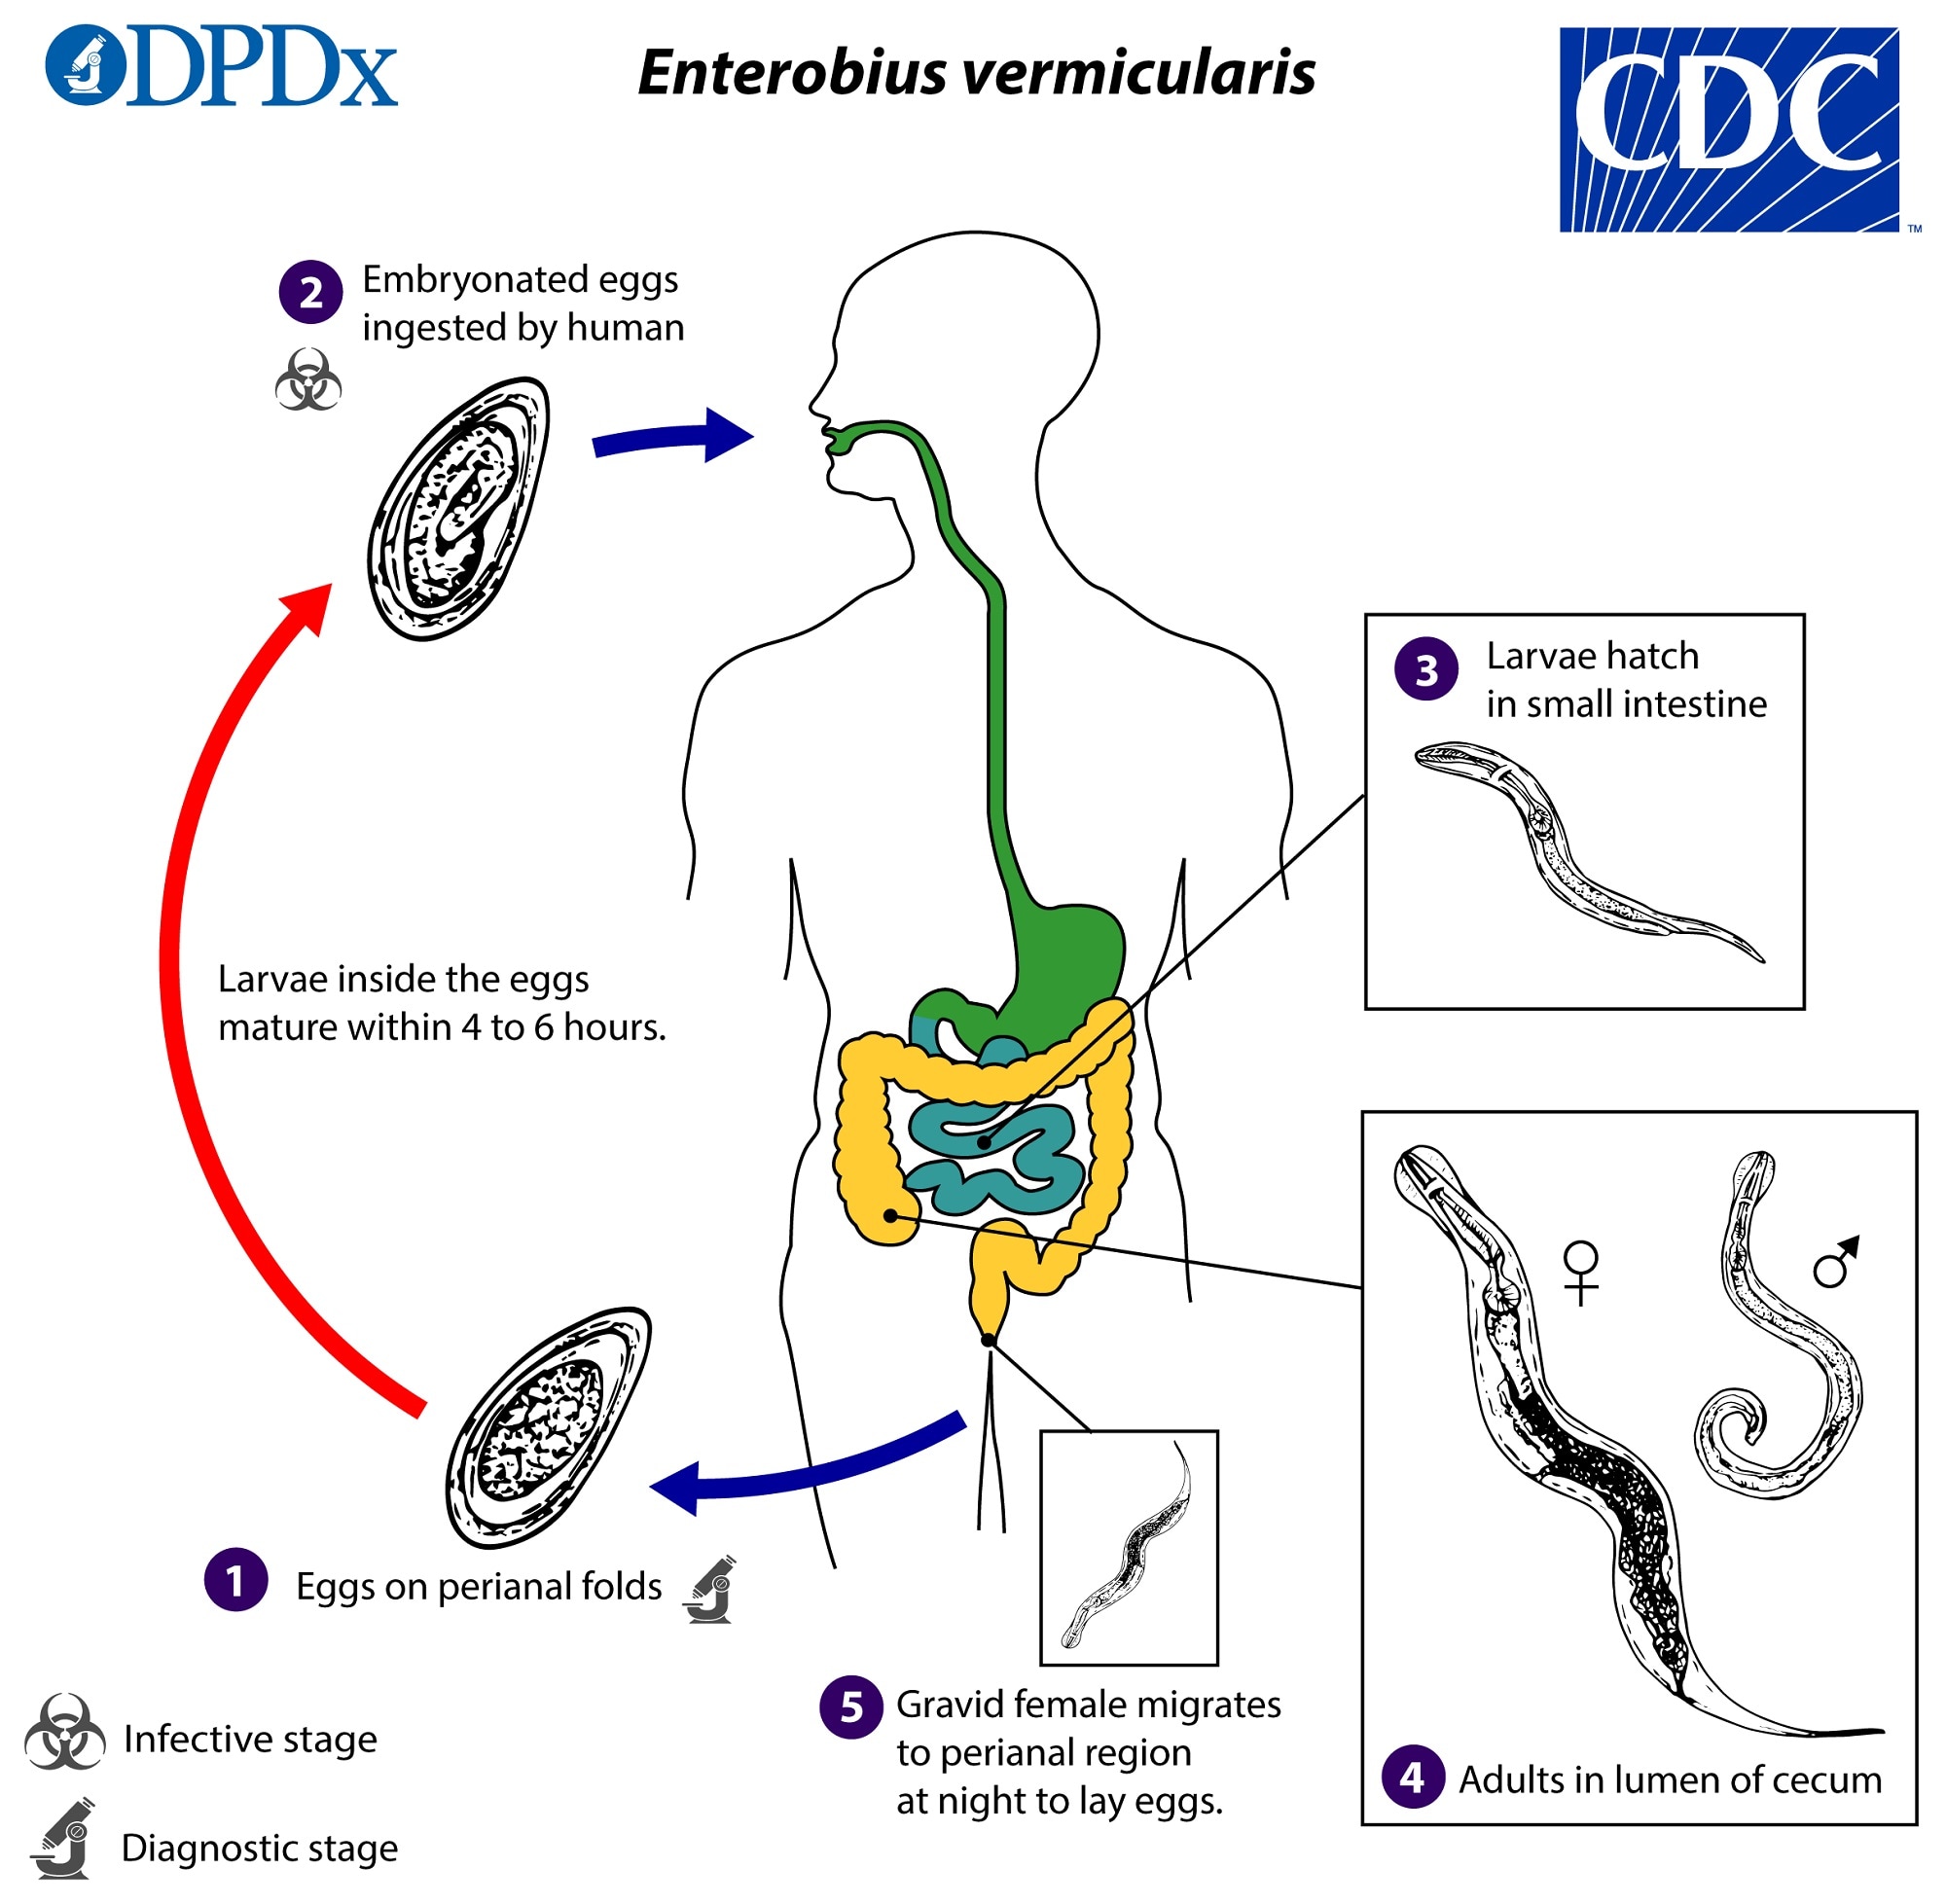 Enterobius vermicularis sta je - Cum se vindecă papiloamele de pe piele